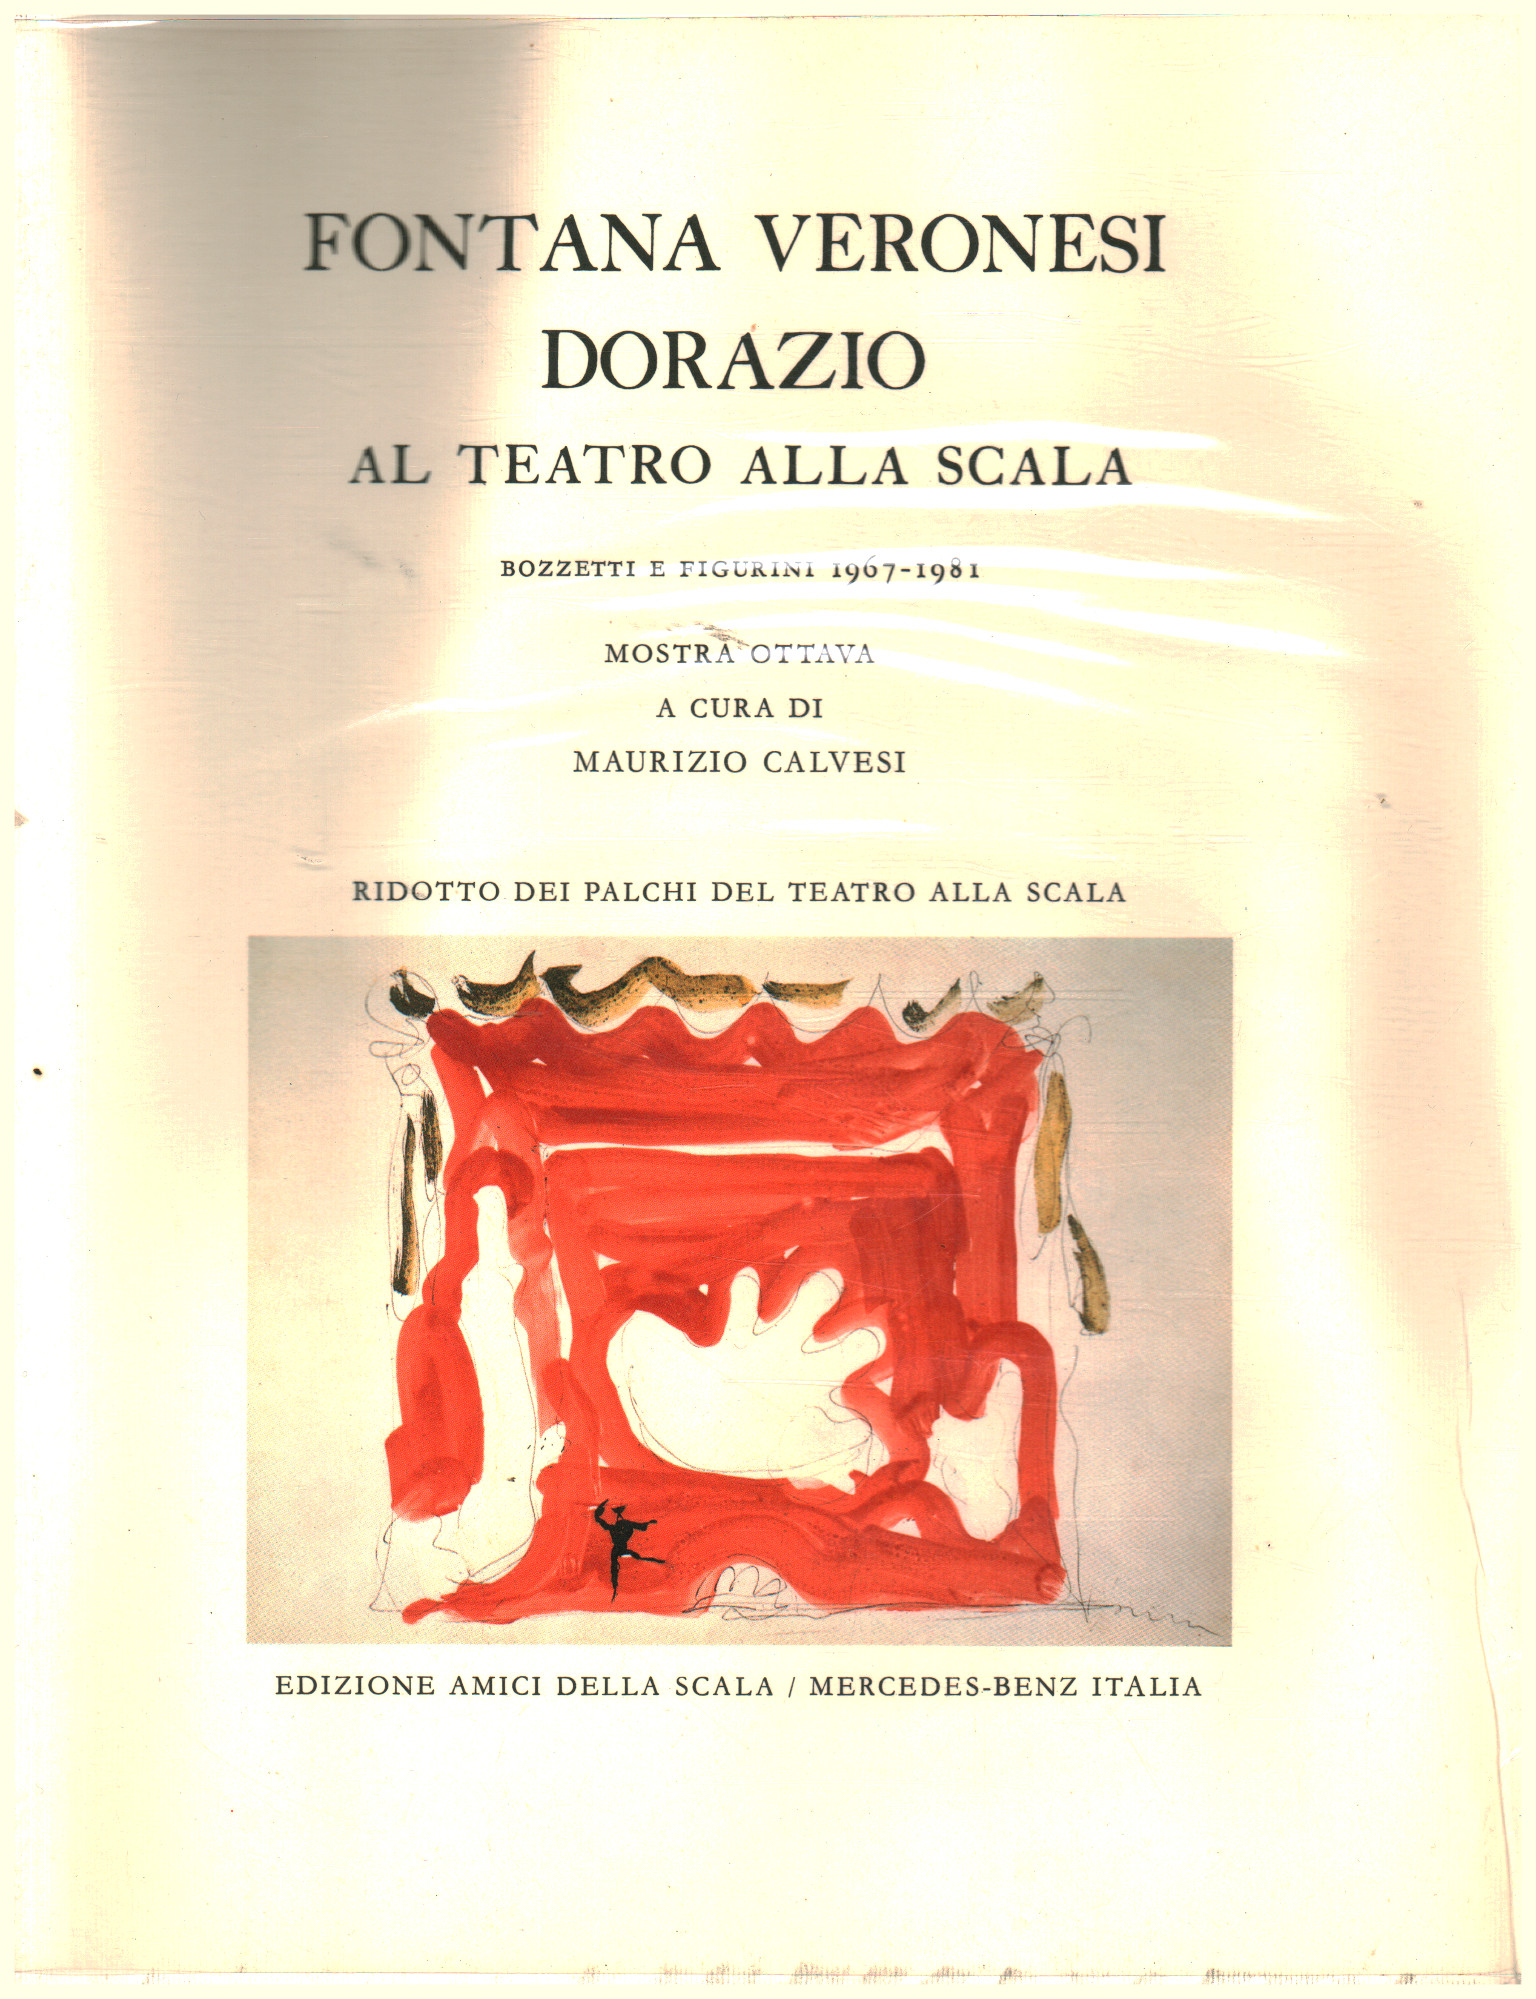 Veronesi Fountain Dorazio au Teatro alla Scala, Maurizio Calvesi